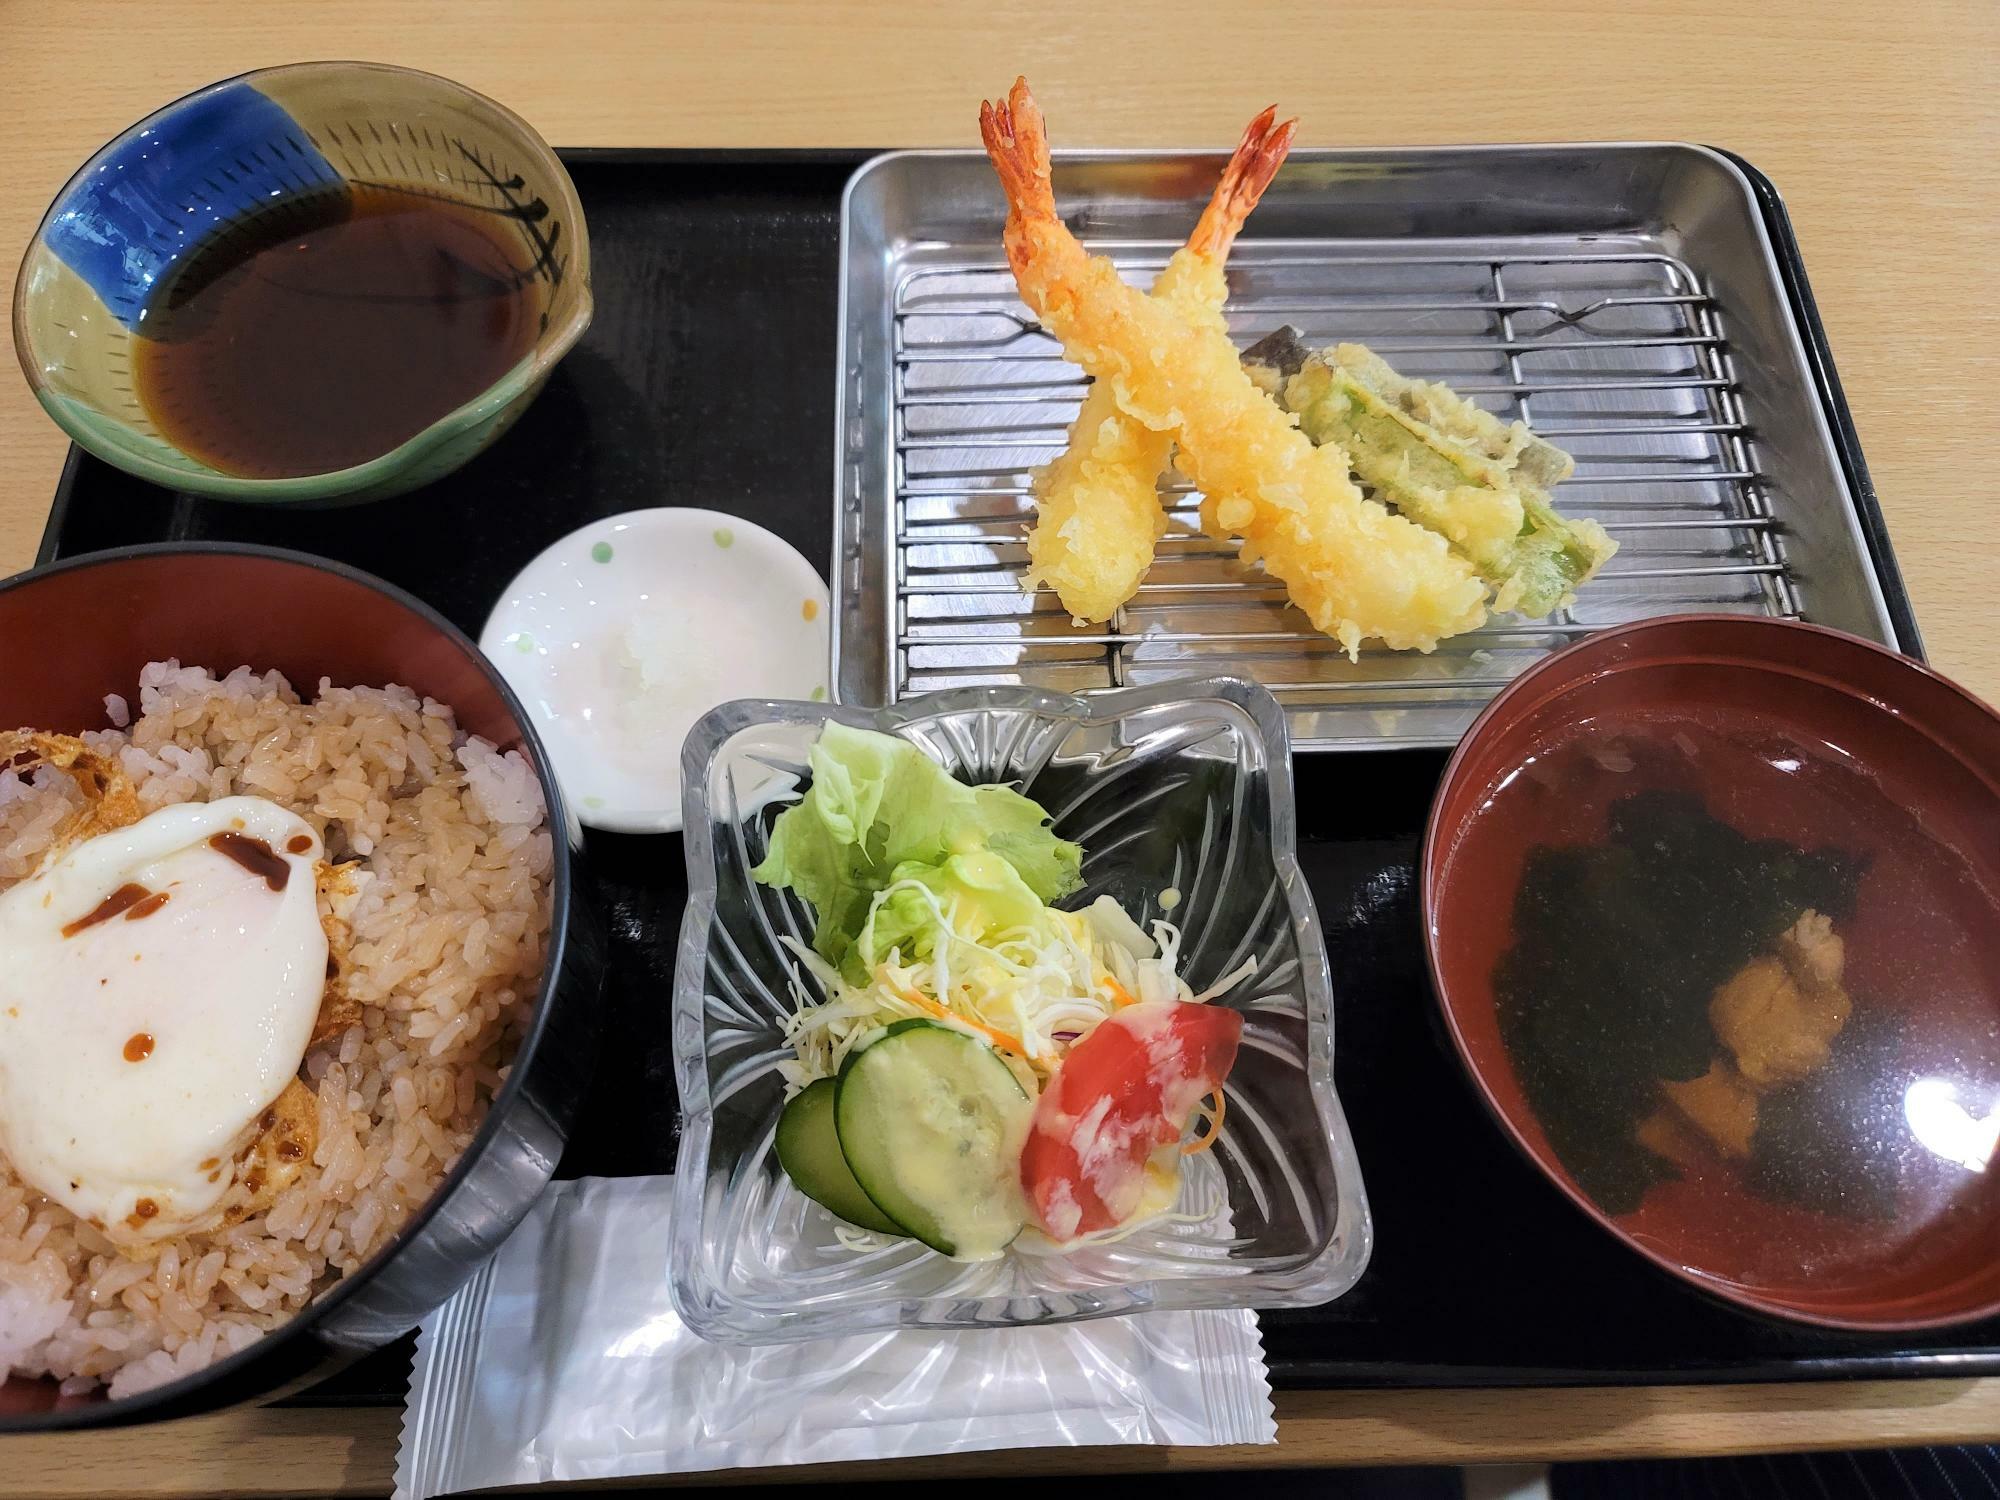 「特上天ぷら定食（1,100円）」。天ぷらはまだすべてそろっていない状態。